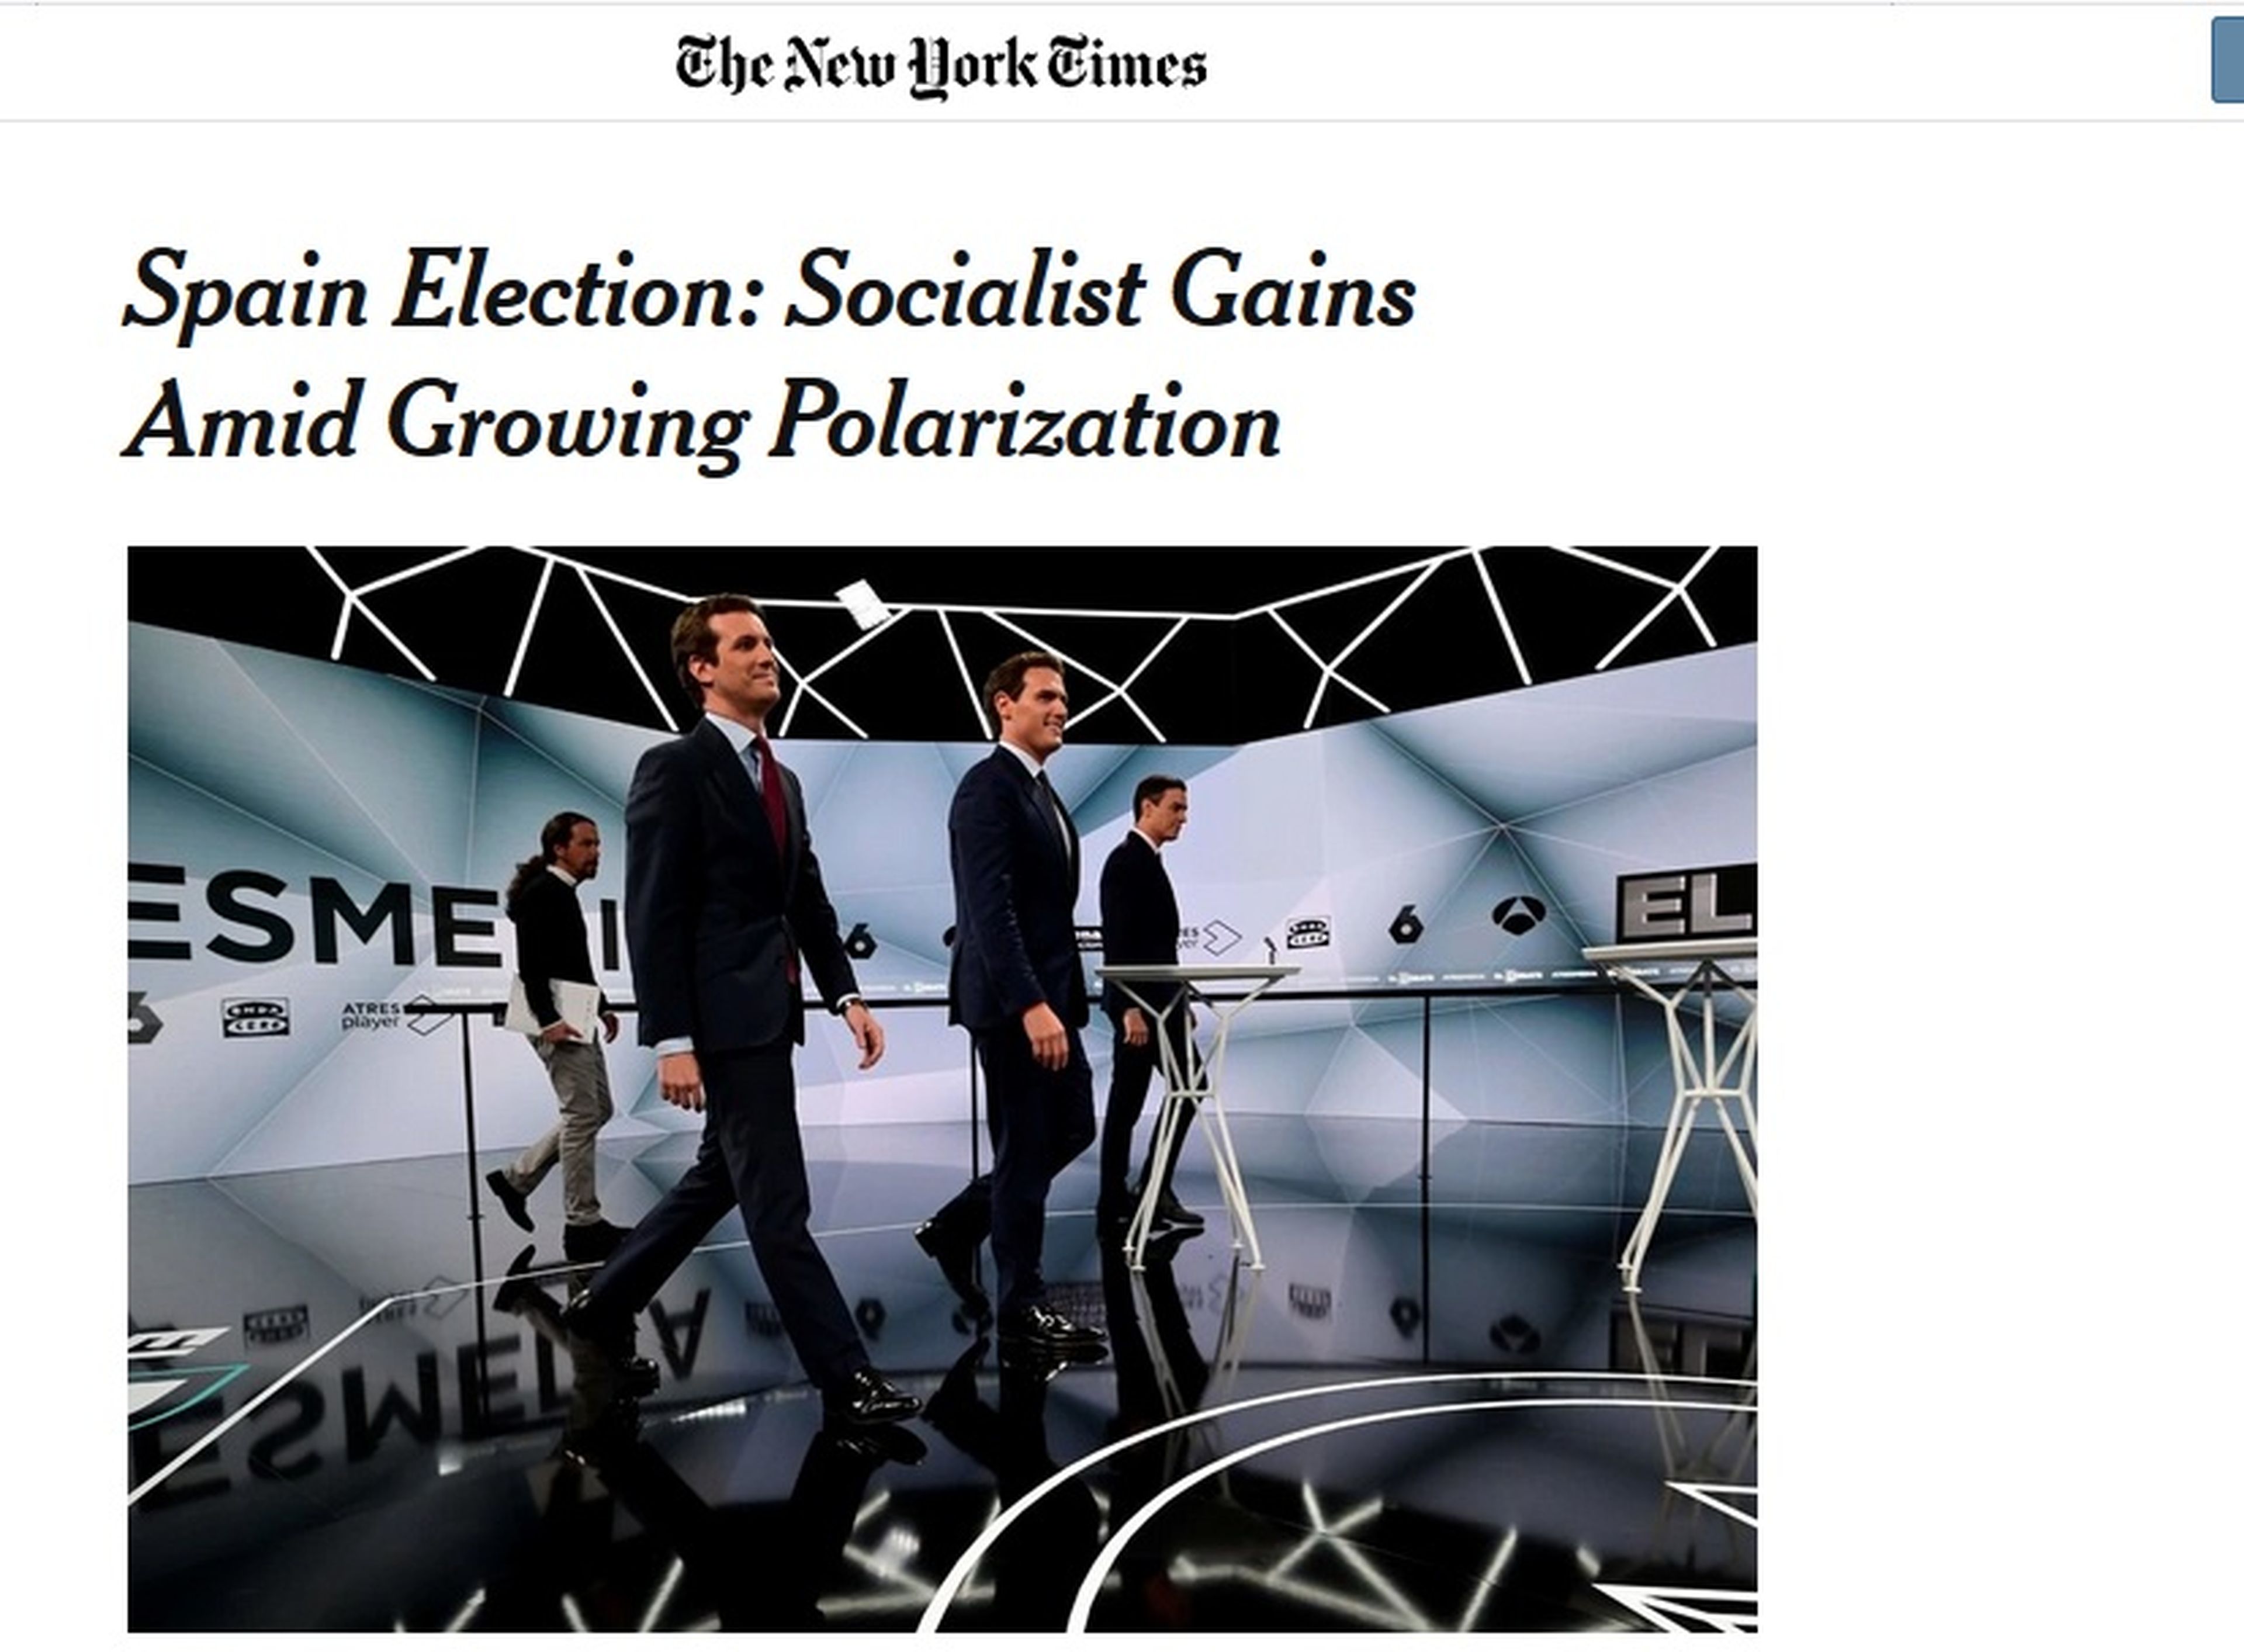 New York Times analiza la victoria socialista